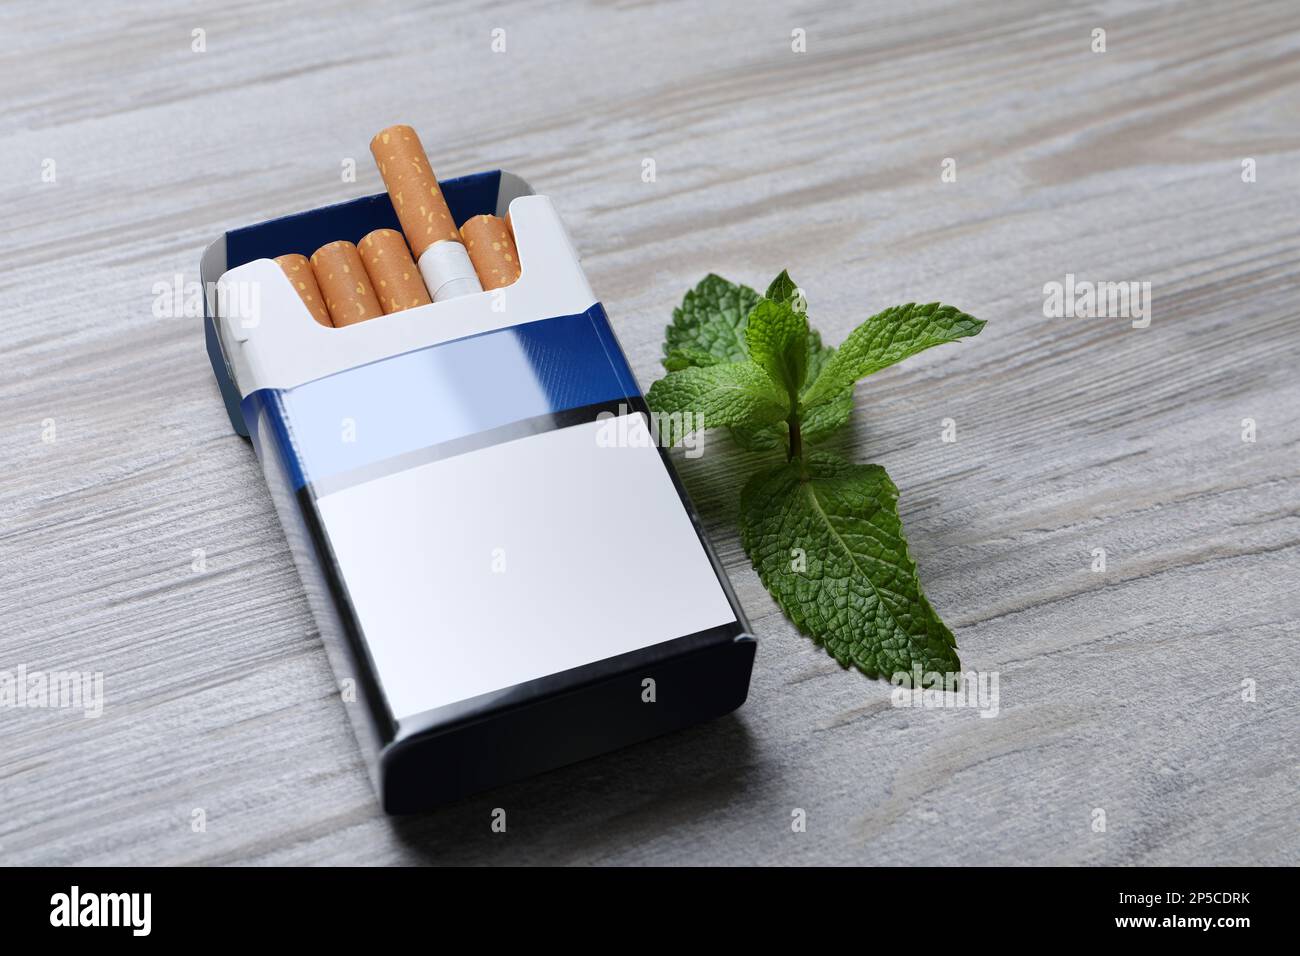 Paquet de cigarettes de menthol et de menthe sur une table en bois clair Banque D'Images